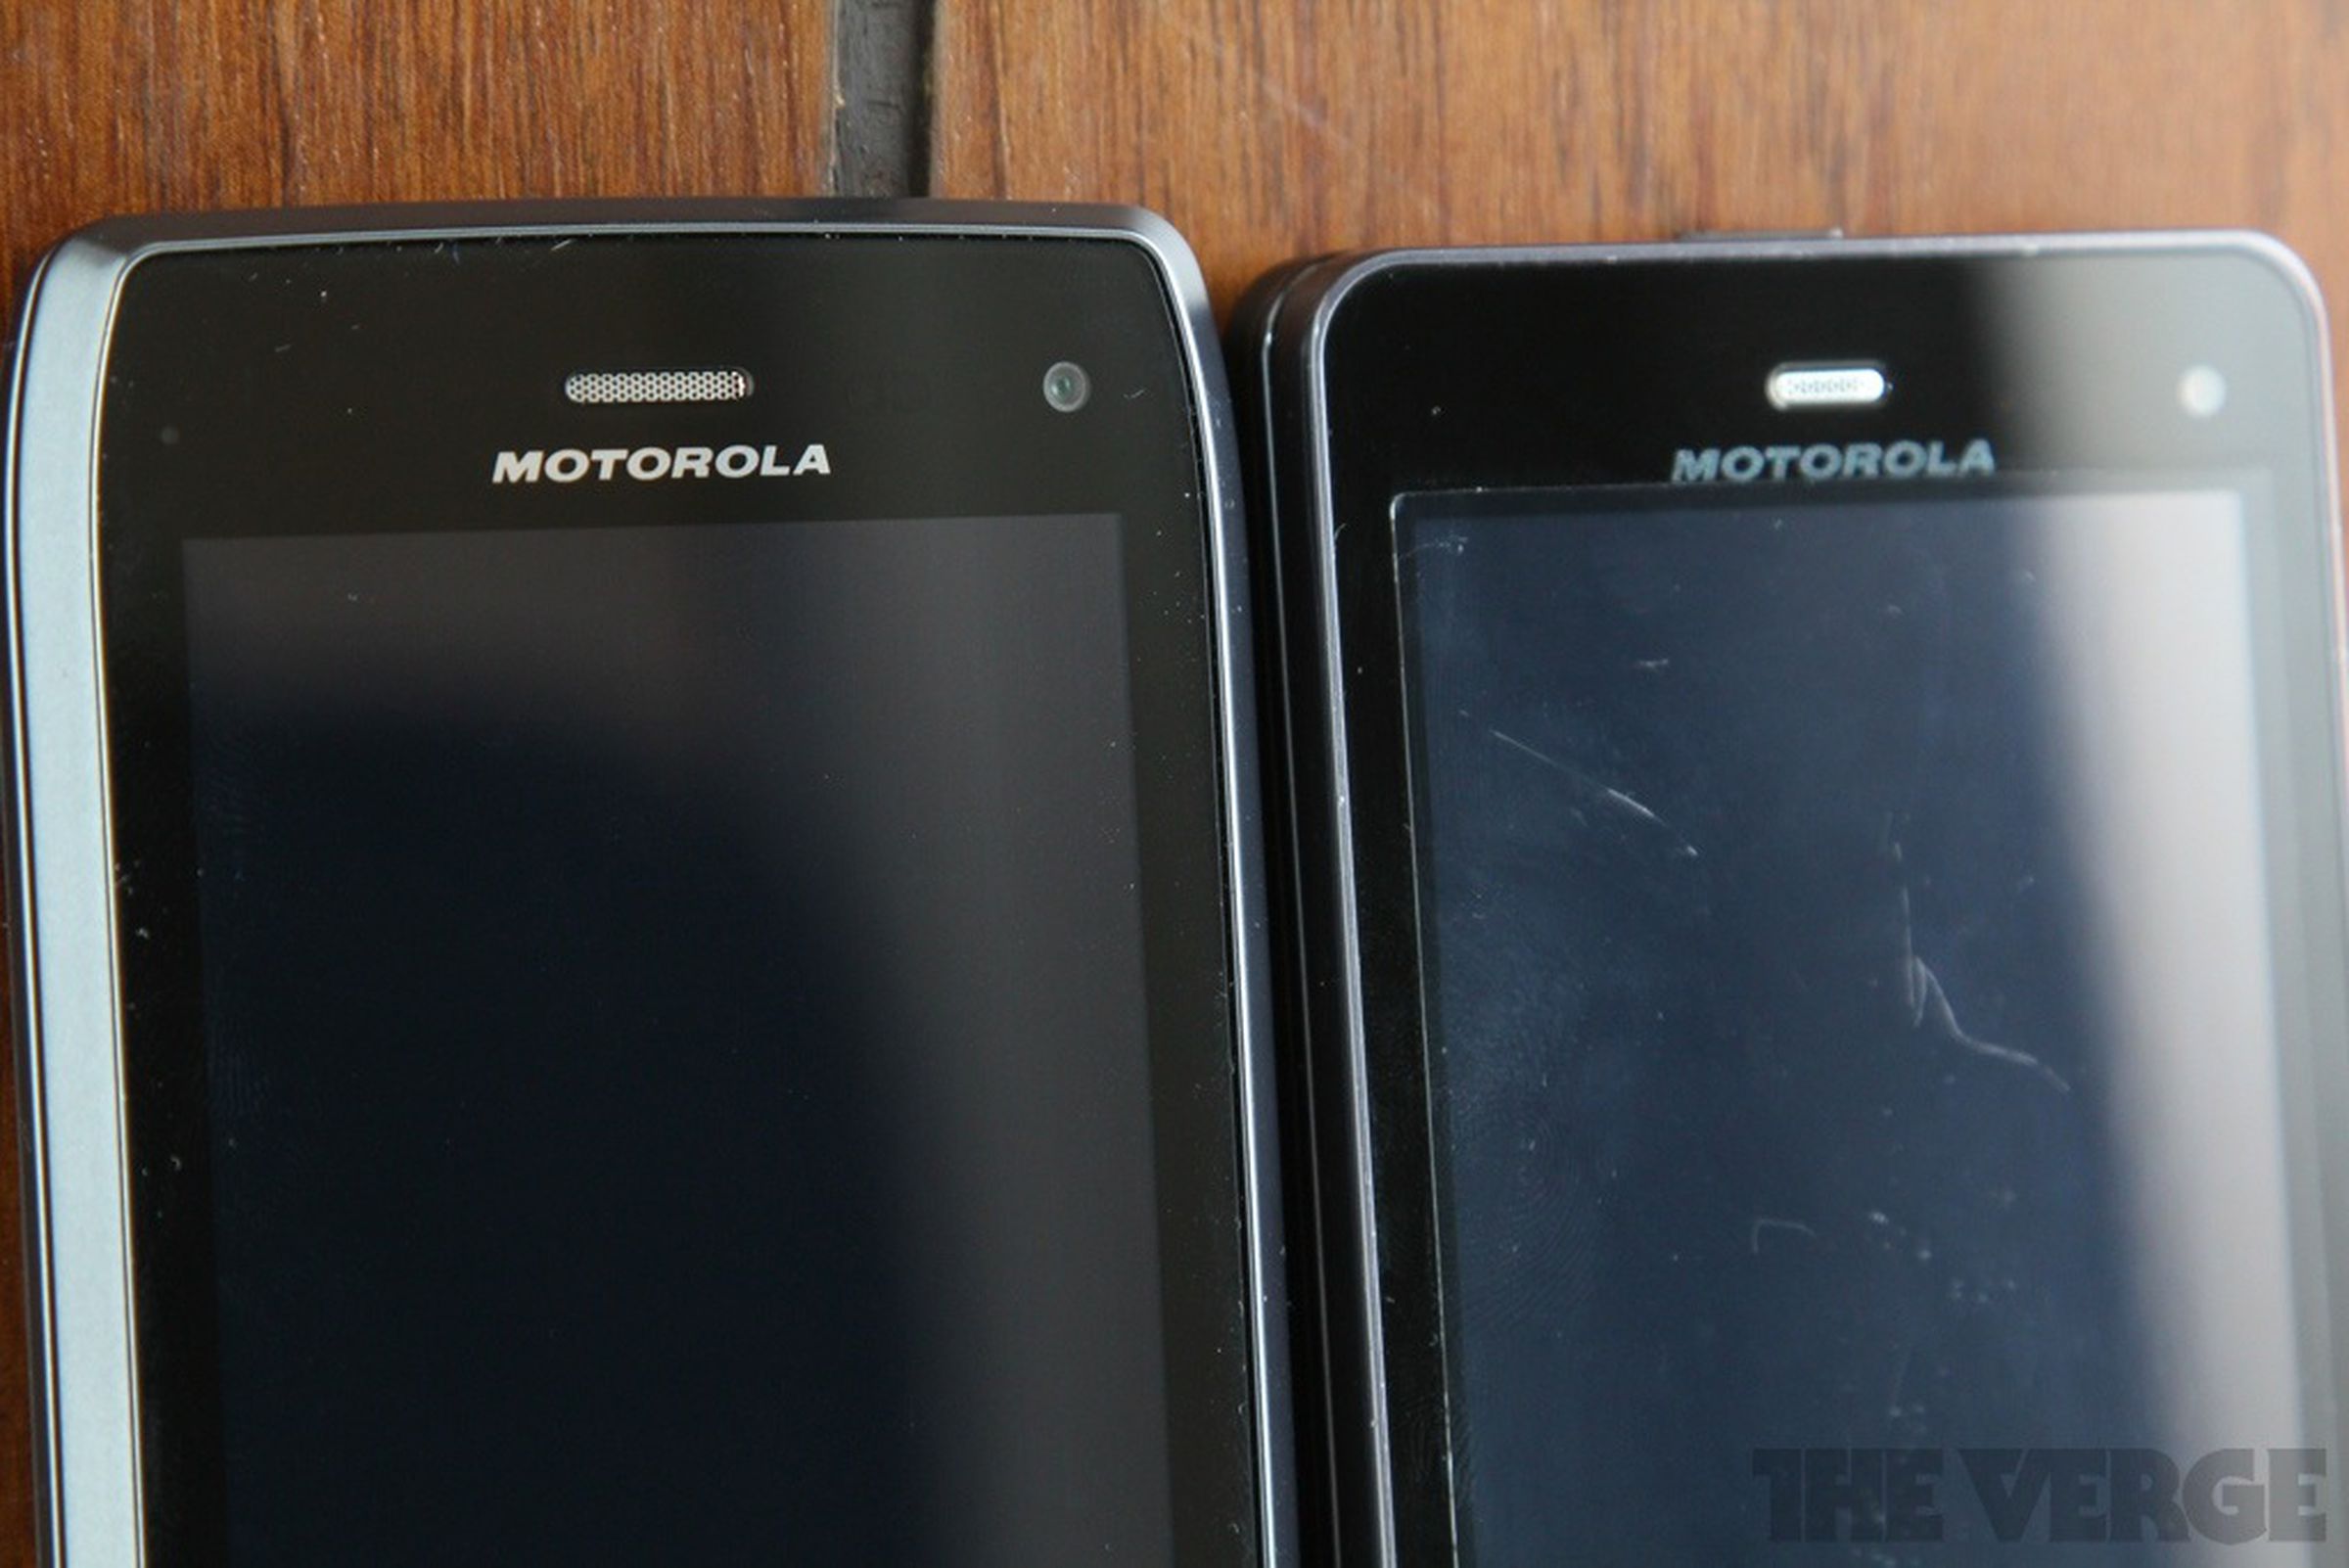 Motorola Droid 4 vs. Droid 3 comparison pictures